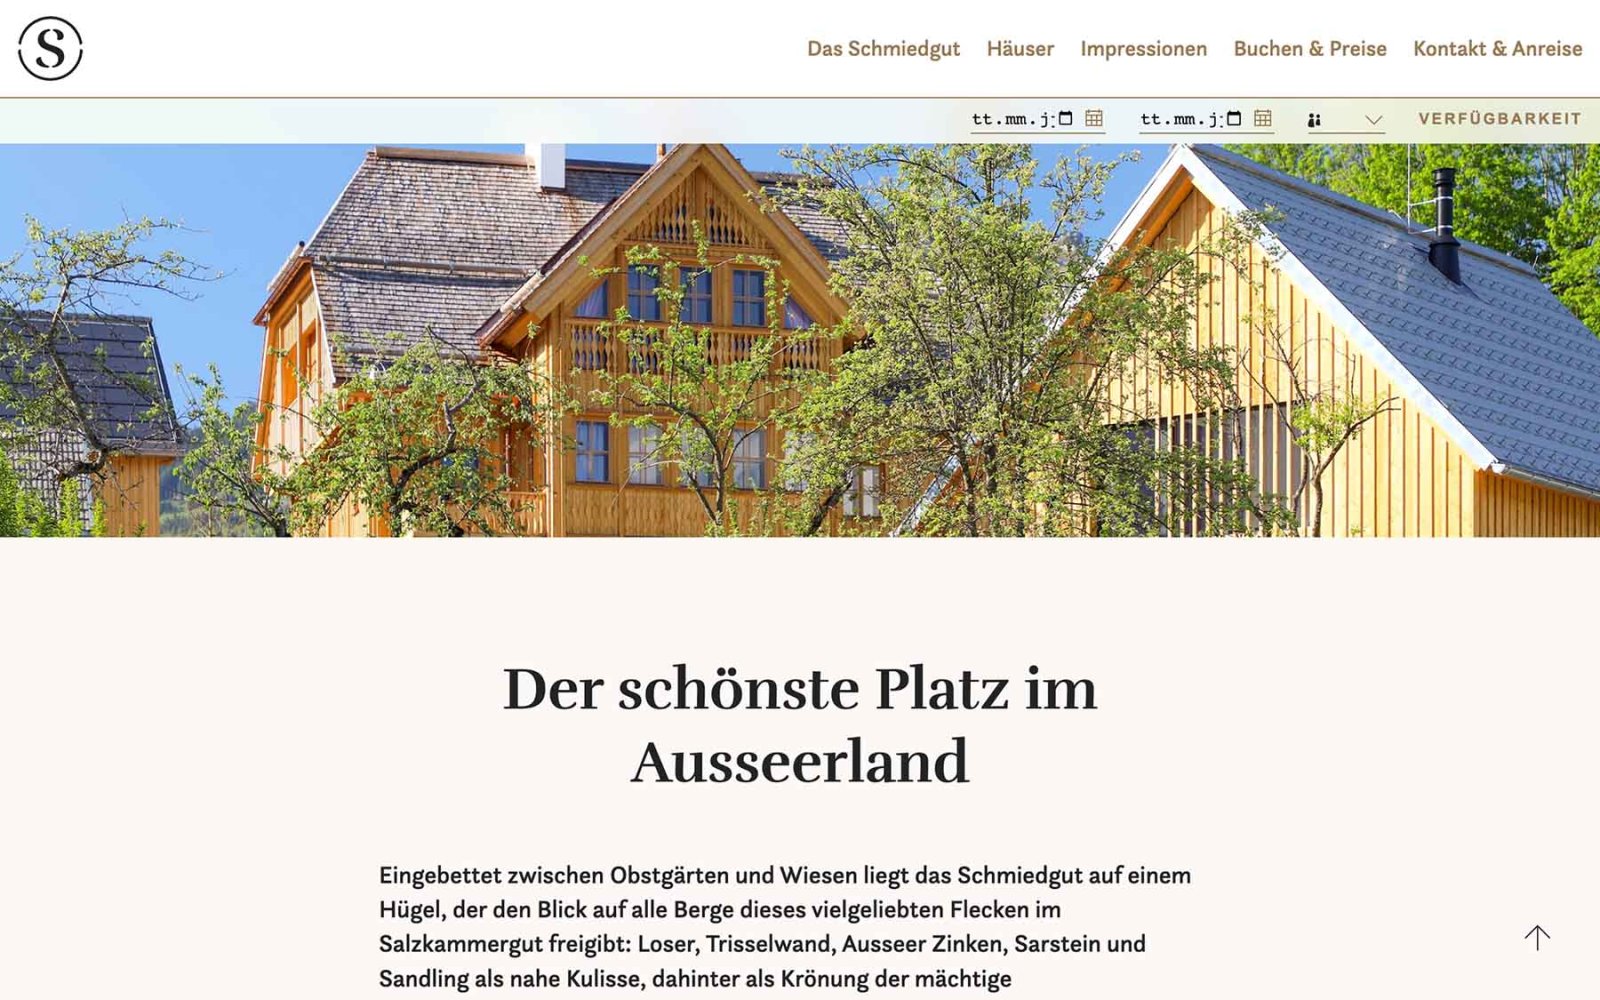 Website-Landingpage Schmiedgut Bad Aussee mit Angebot zu den jeweiligen Häuesern